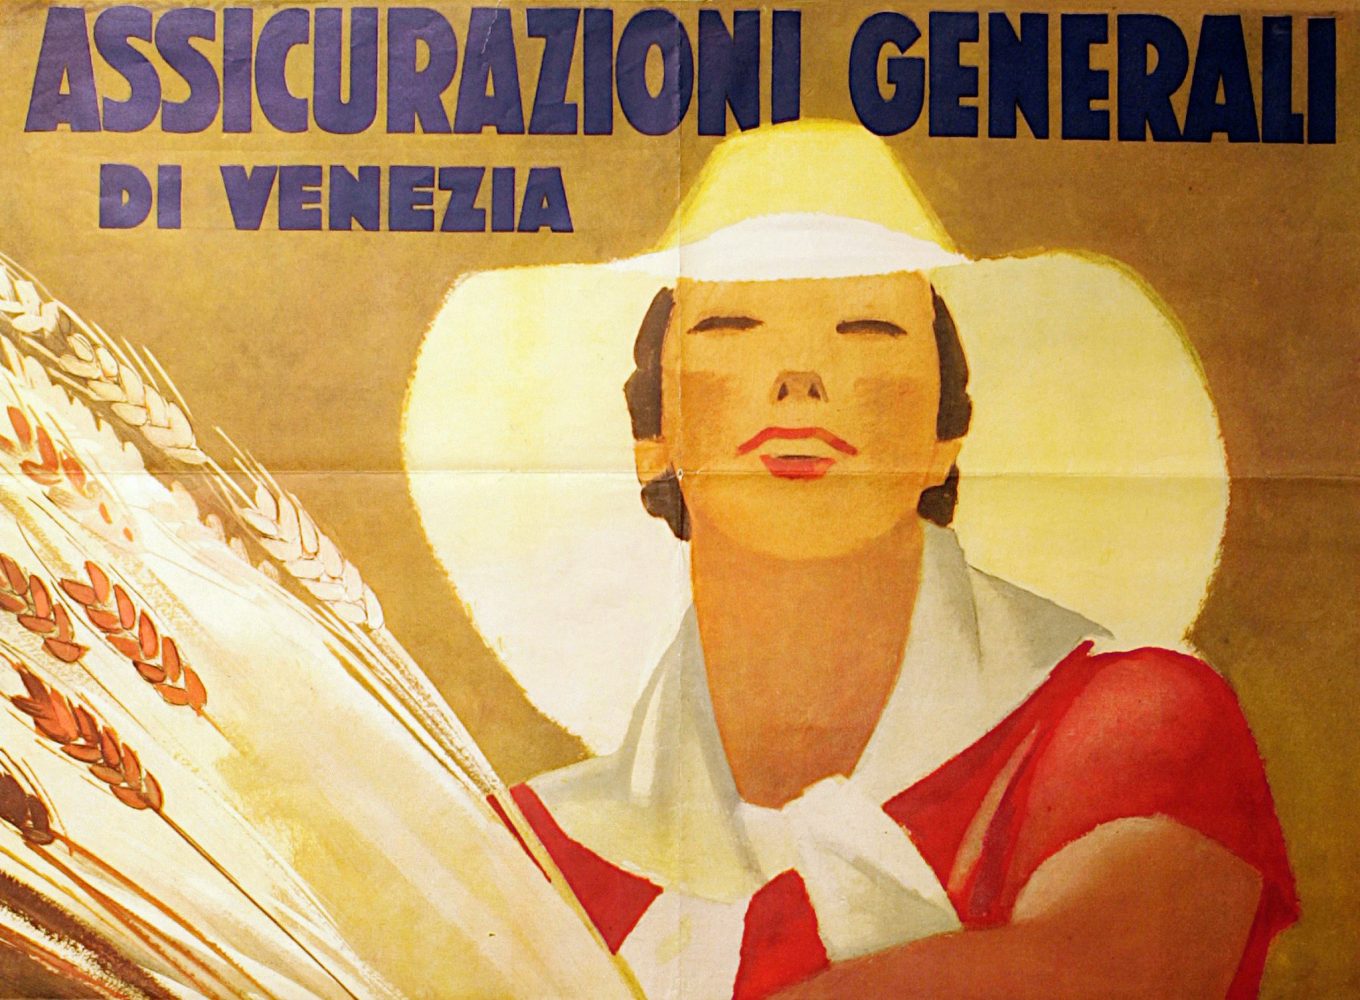 Marcello Dudovich, manifesto pubblicitario Assicurazioni Generali Venezia (1938), particolare